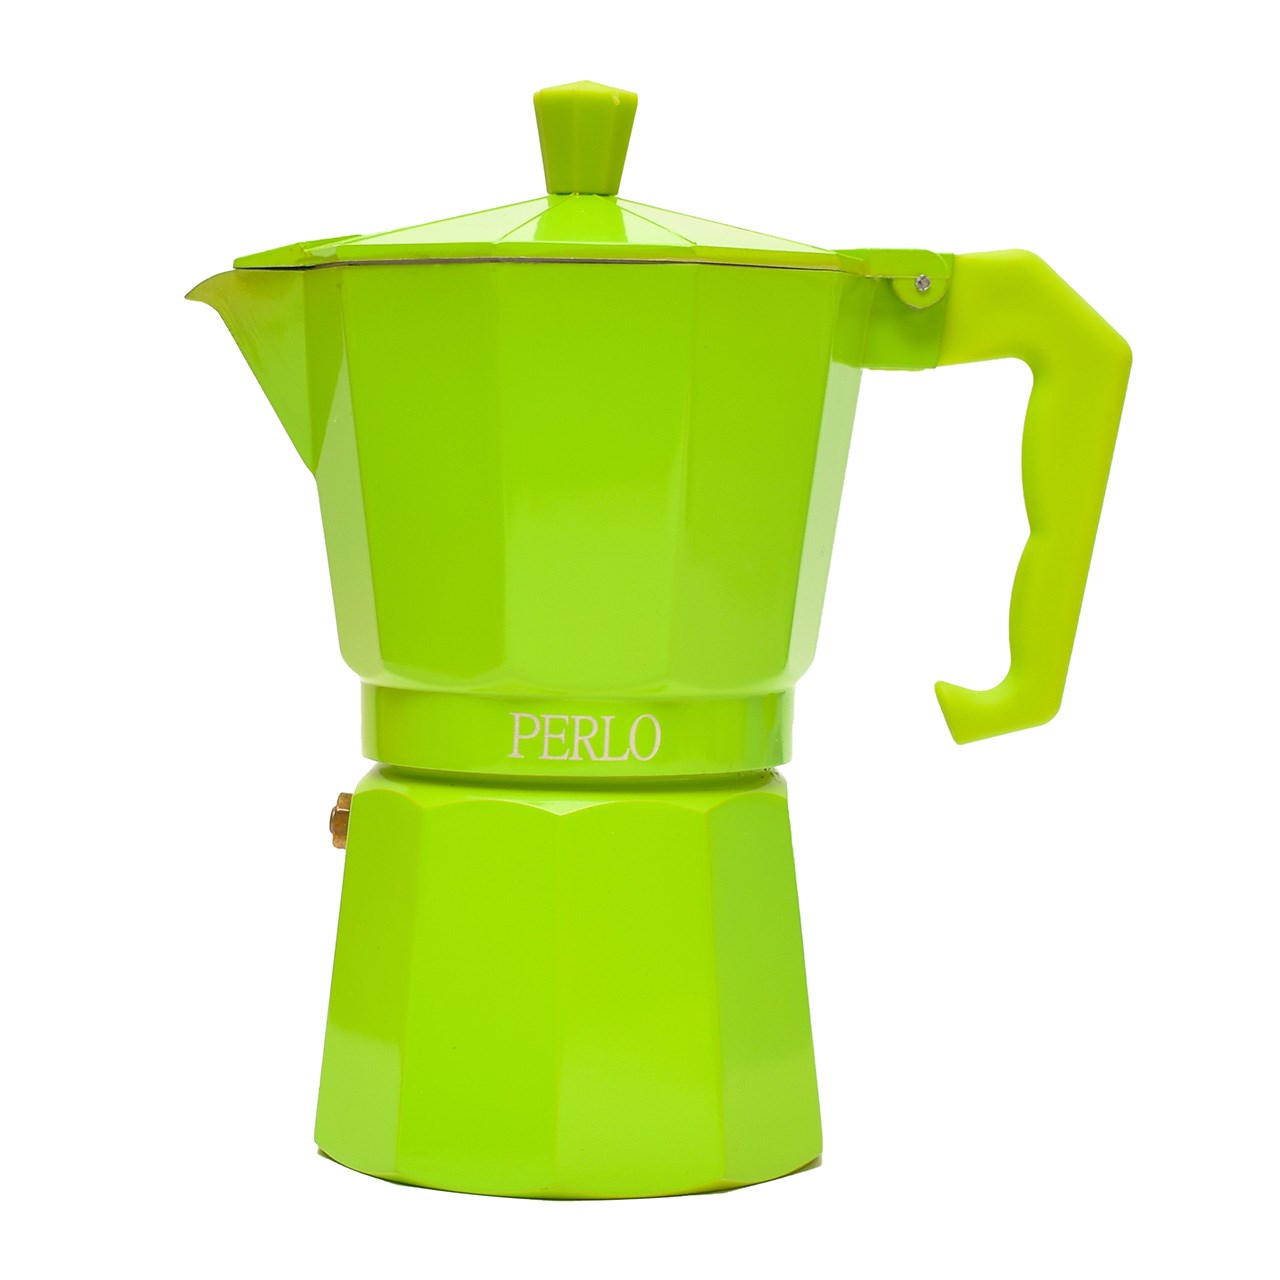 قهوه جوش پرلو مدل M005-6 CUPS